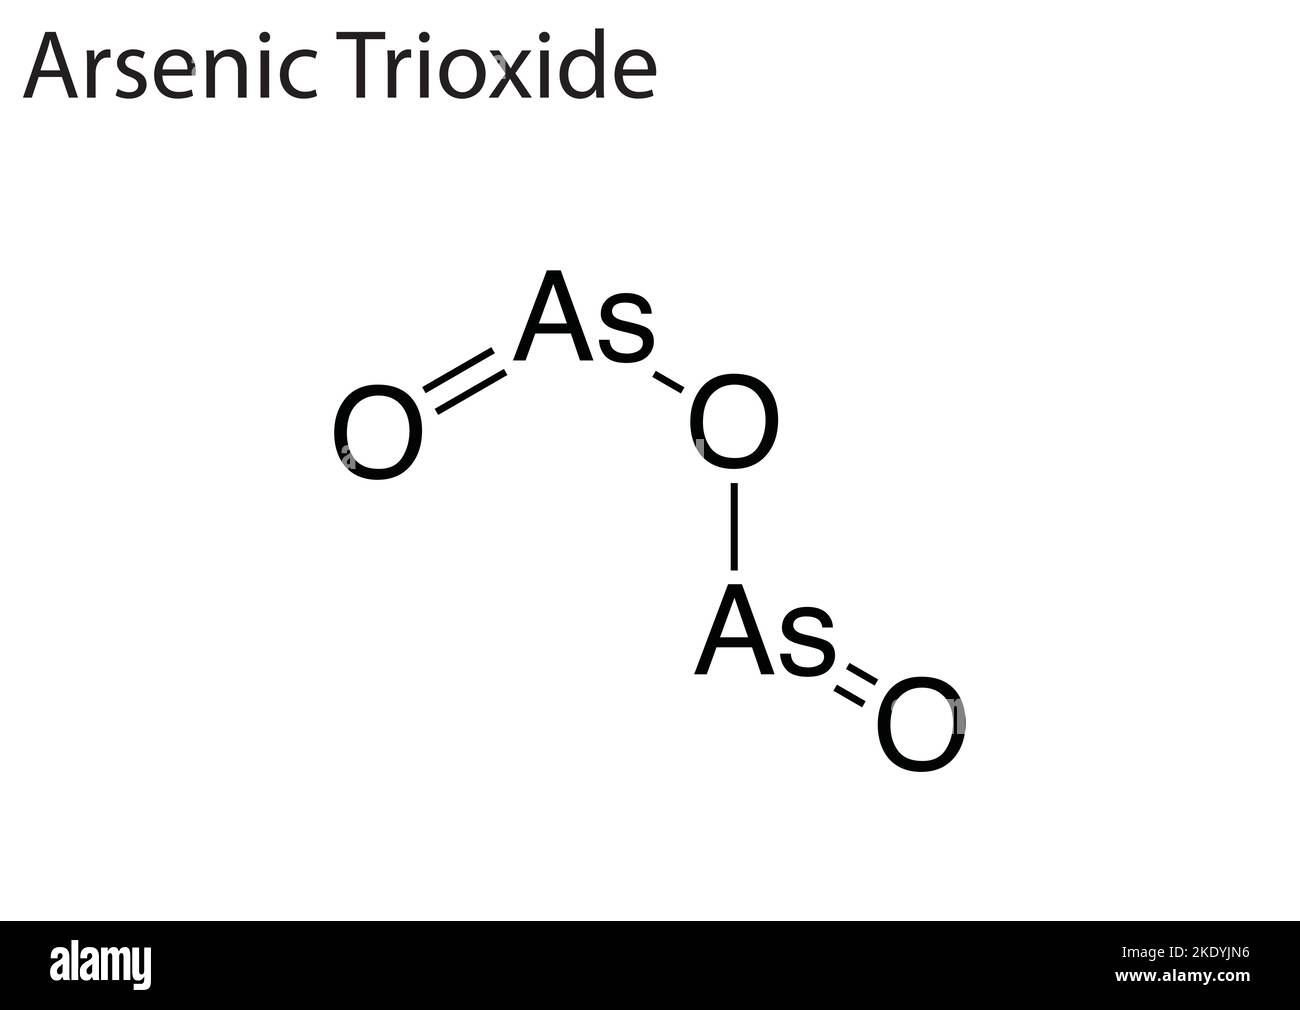 Una struttura chimica di un farmaco antitumorale 'triossido arsenico'  Immagine e Vettoriale - Alamy